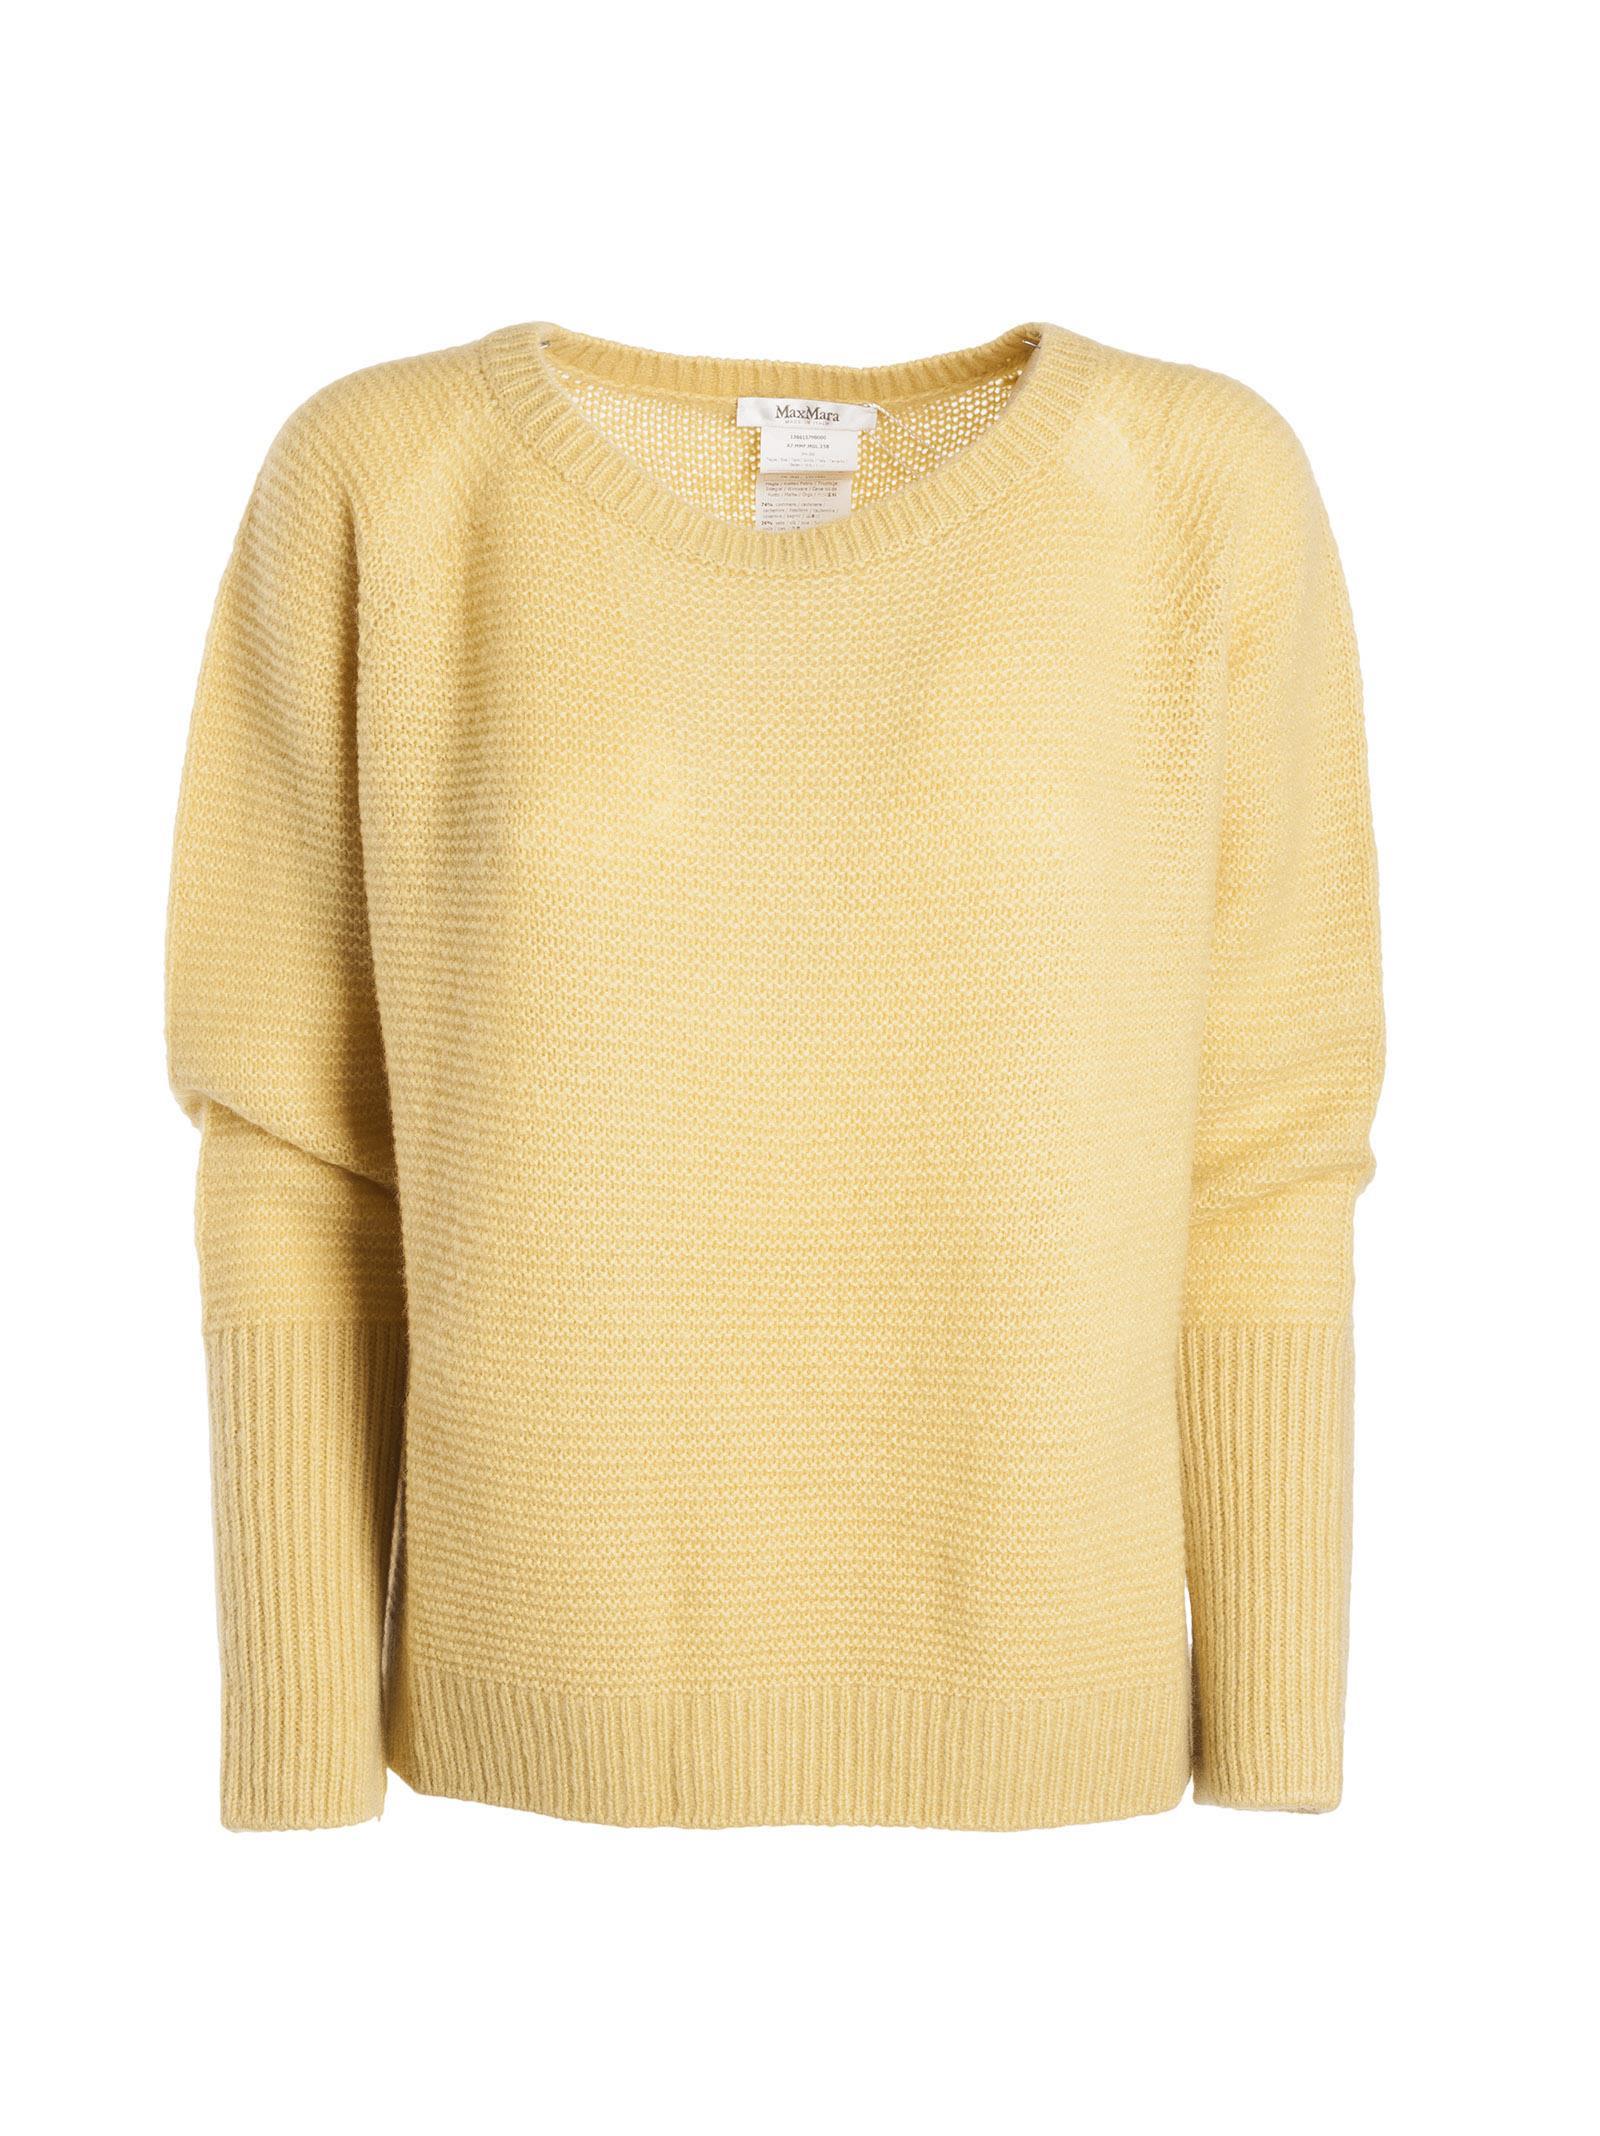 Max Mara Zeno Sweater In Yellow | ModeSens